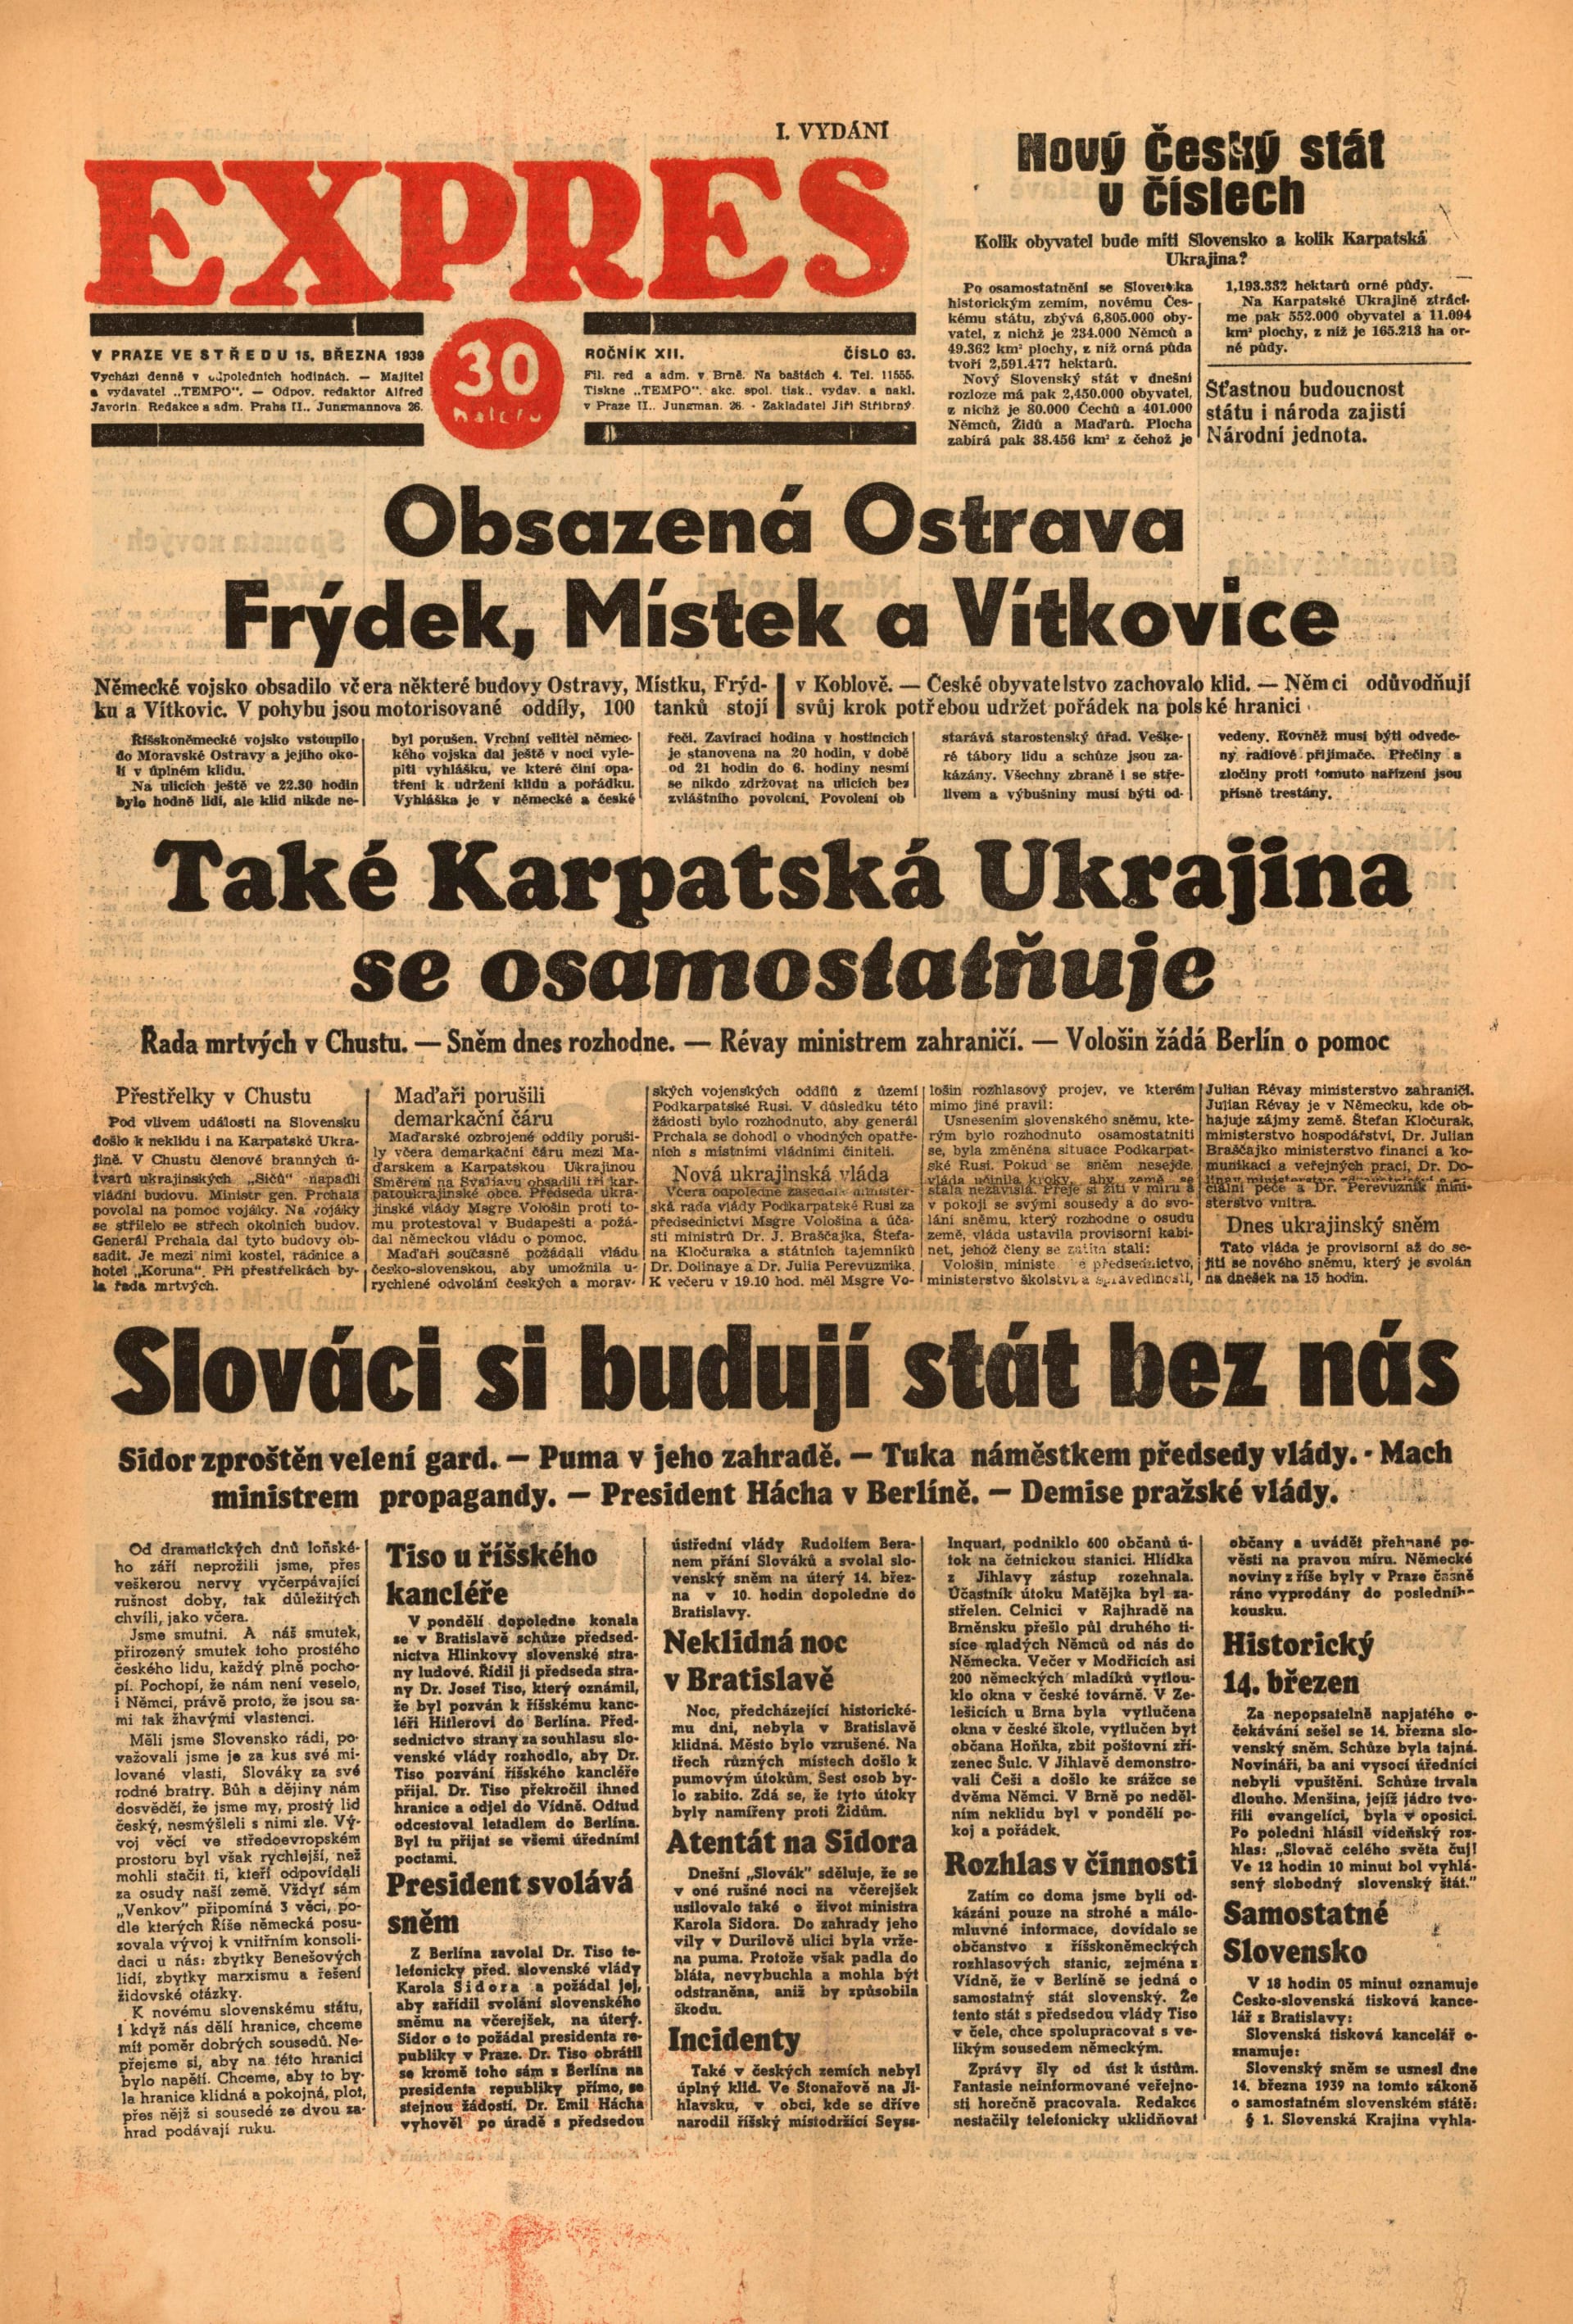 Ztráta Slovenska a Podkarpatské Rusi. České noviny informují o převratných událostech ze 14. března 1939.